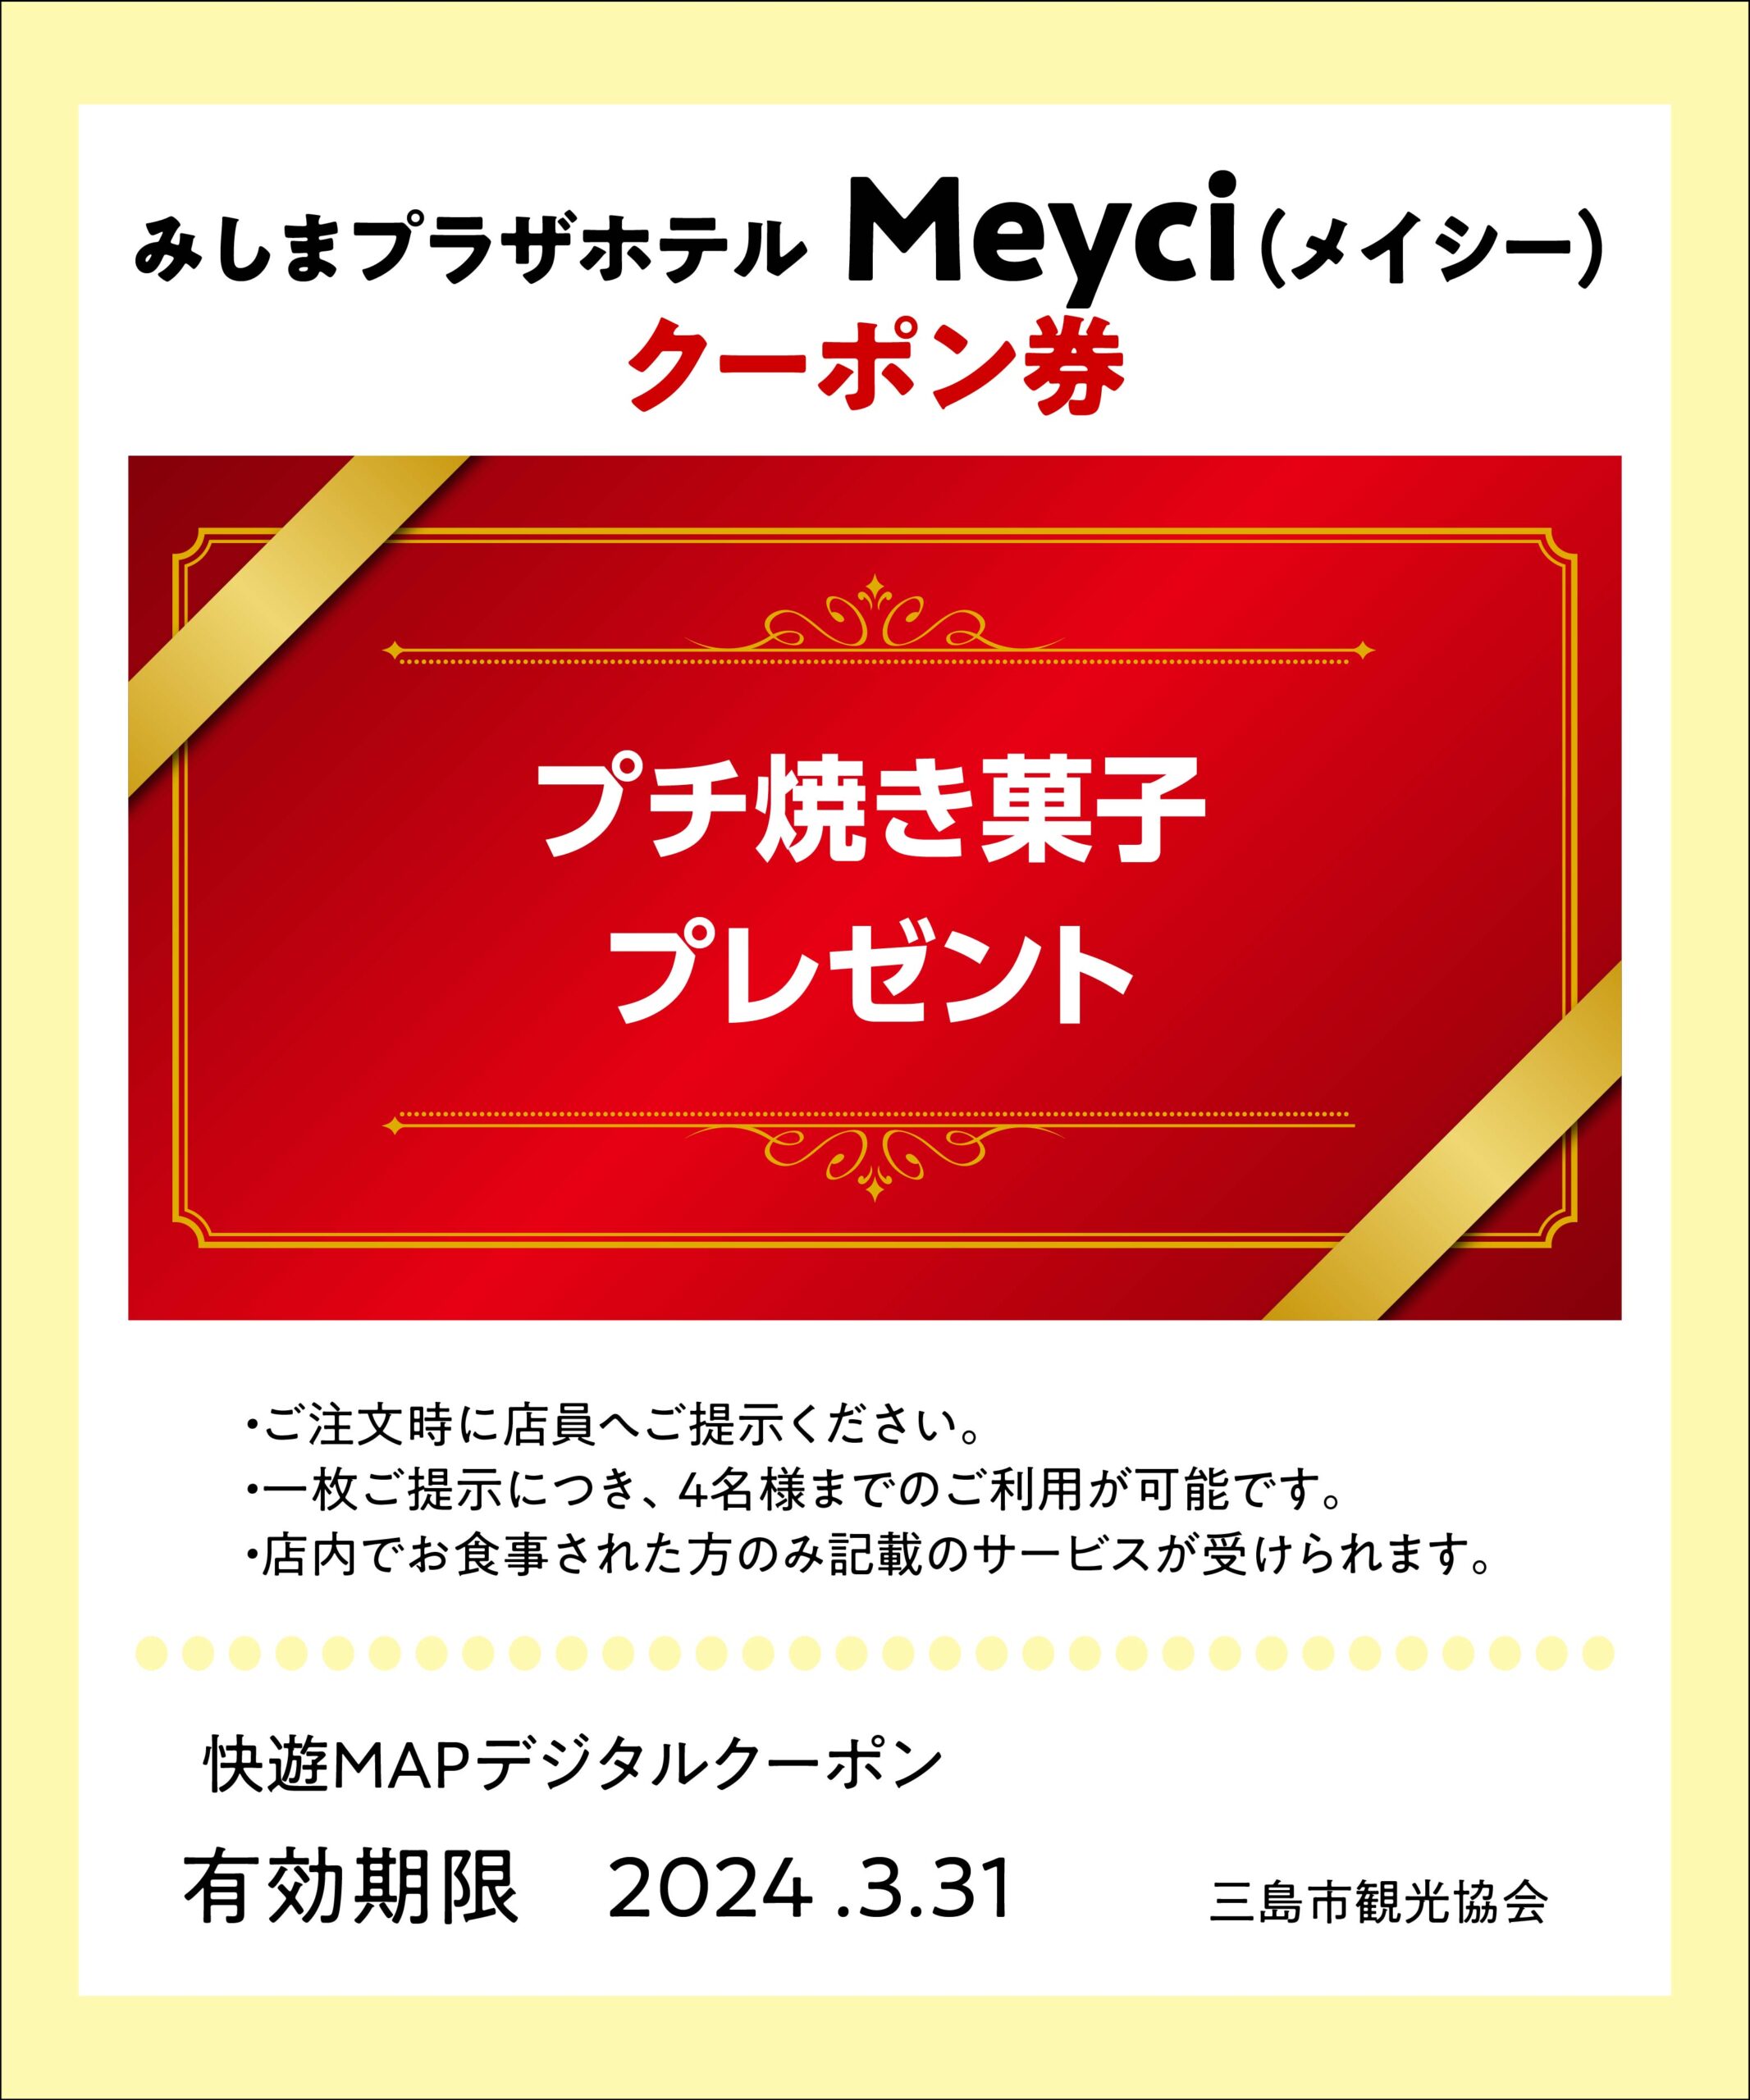 みしまプラザホテル Meyci(メイシー)クーポン券